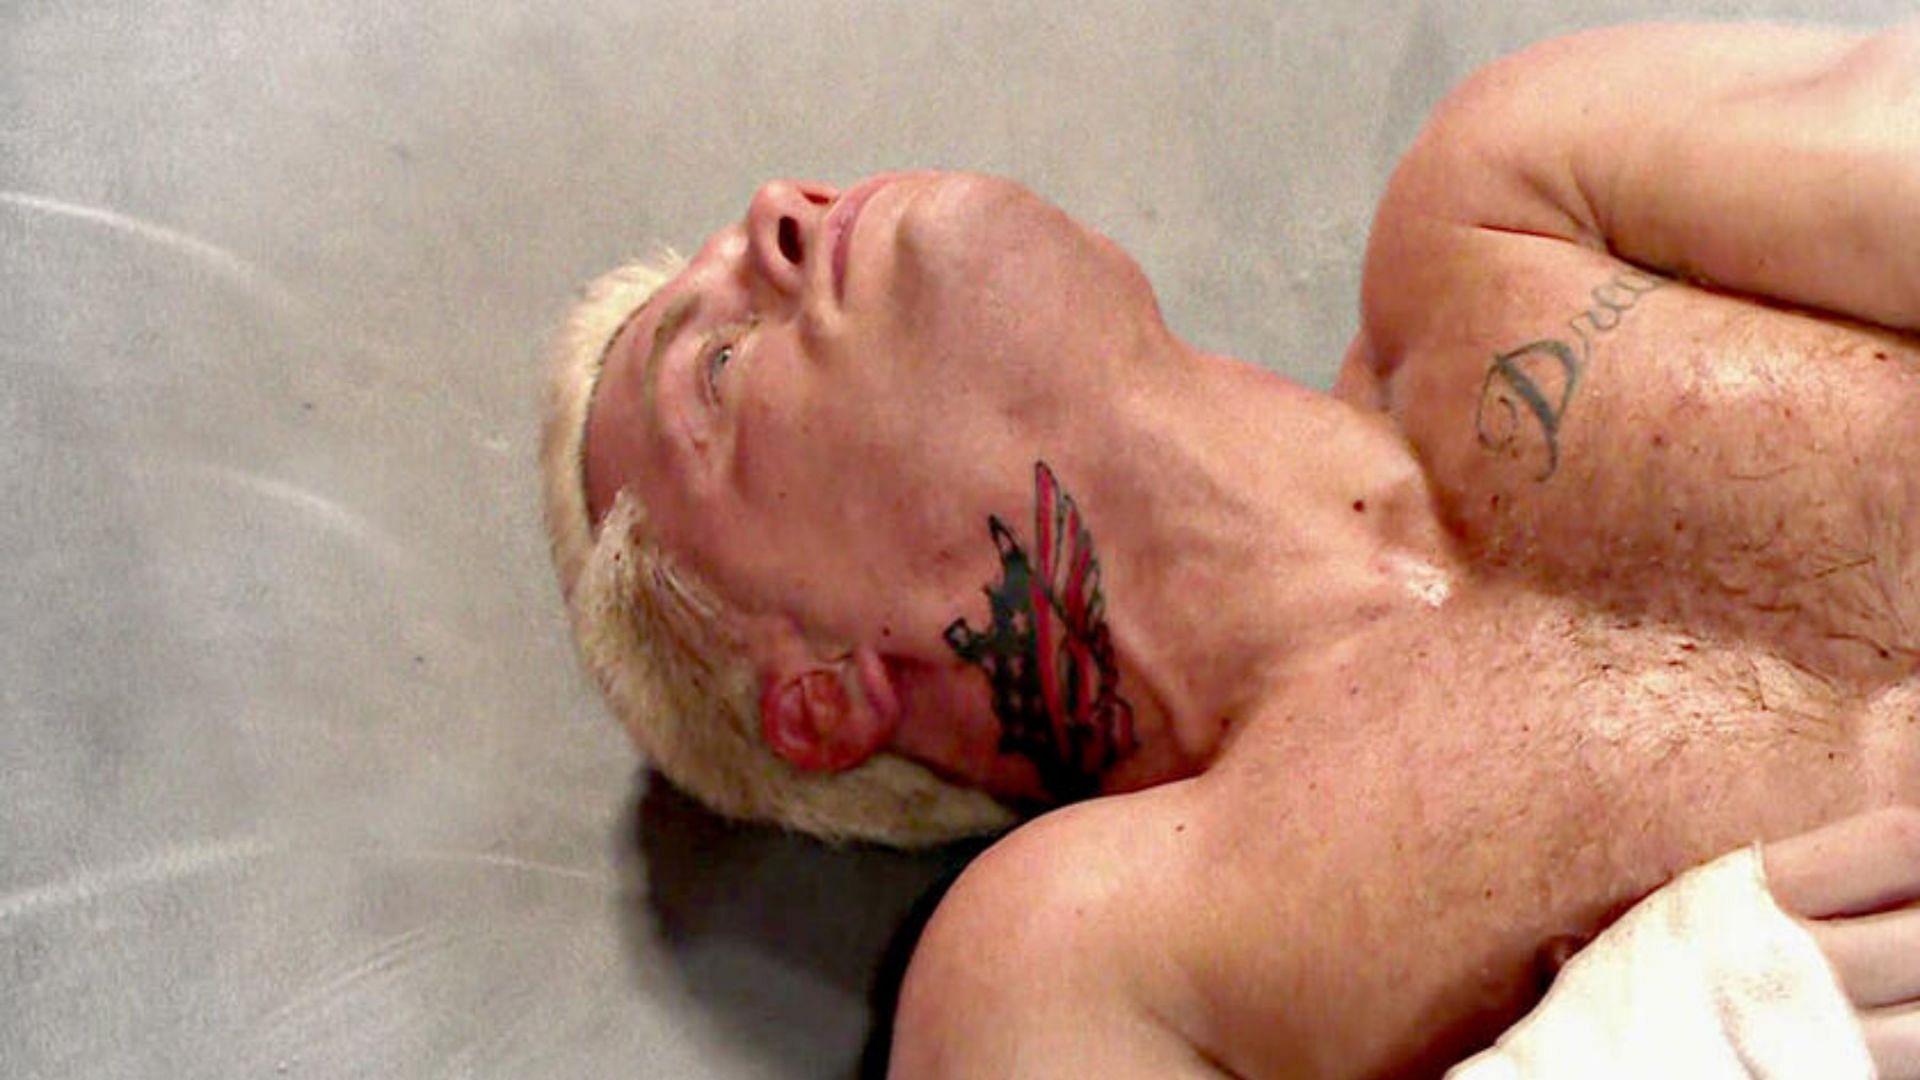 Undisputed WWE Champion Cody Rhodes